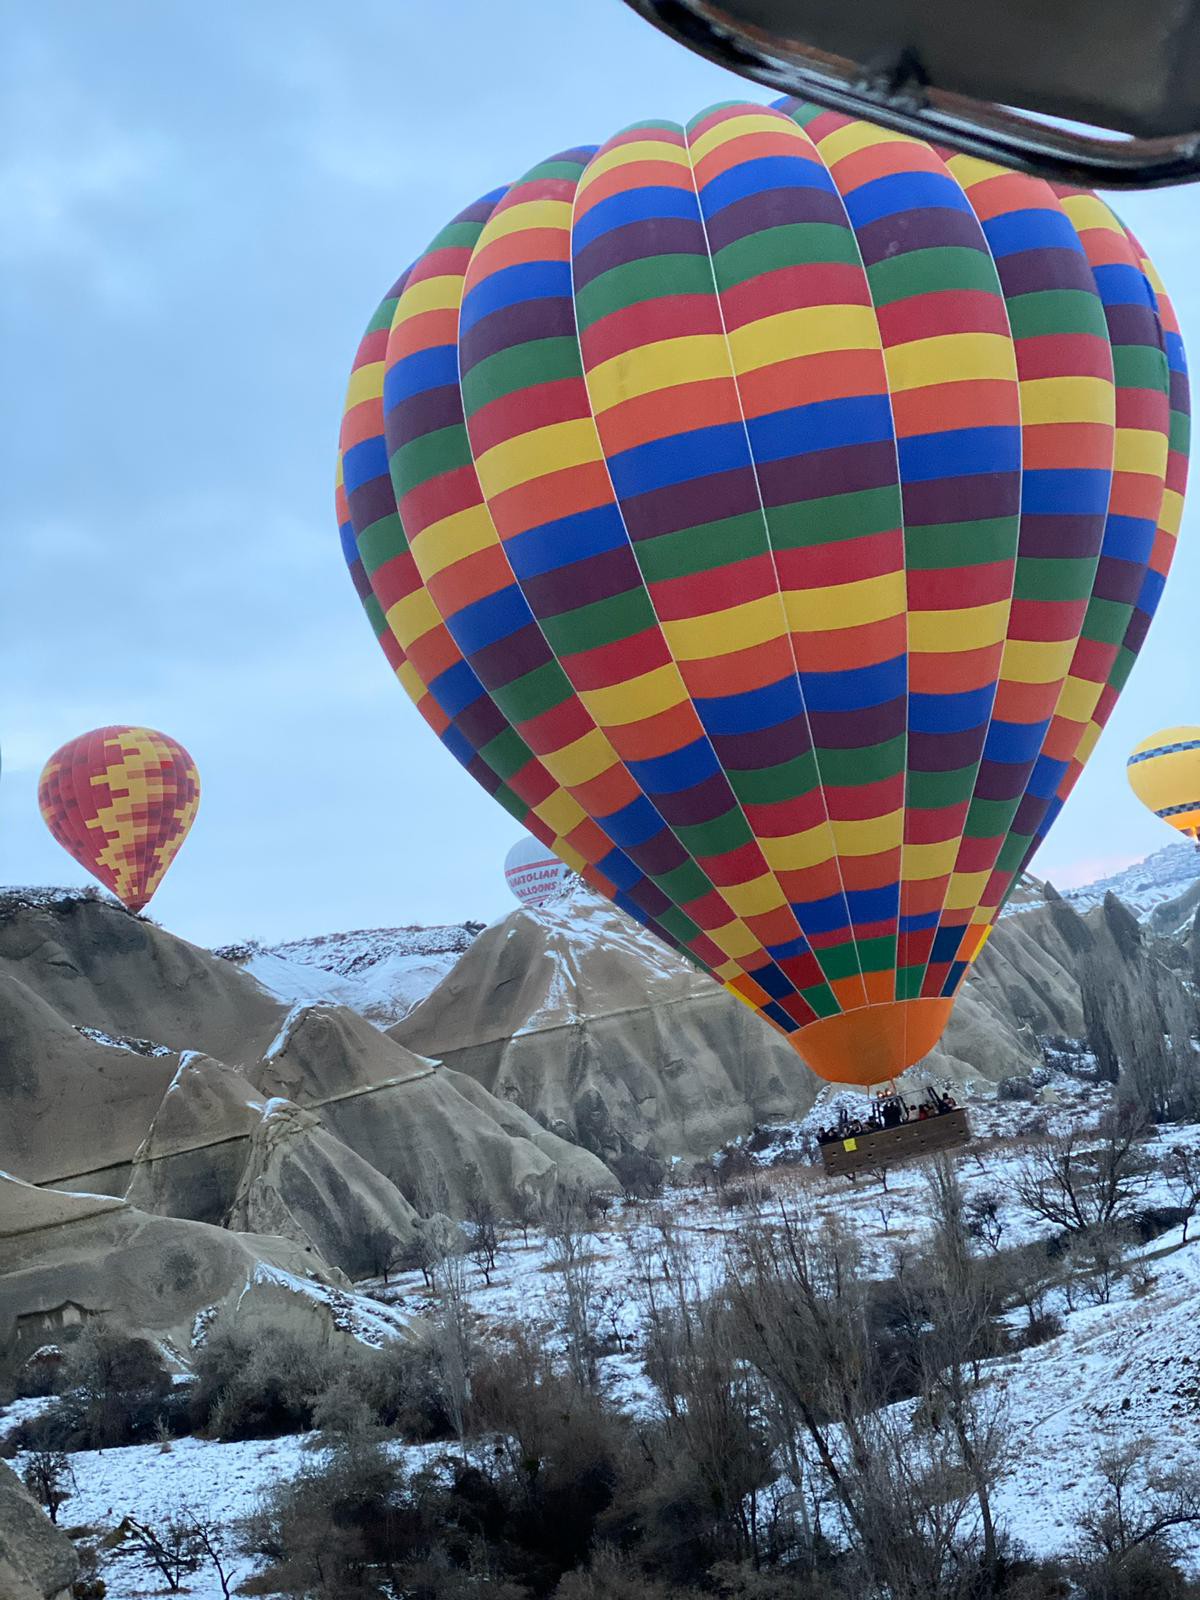 Kapadokya bu yıl turist rekoru kırdı. Balon turizmine ilgi çok. Balon turizminin bu rekora büyük katkı sunduğunu söyleyebiliriz.